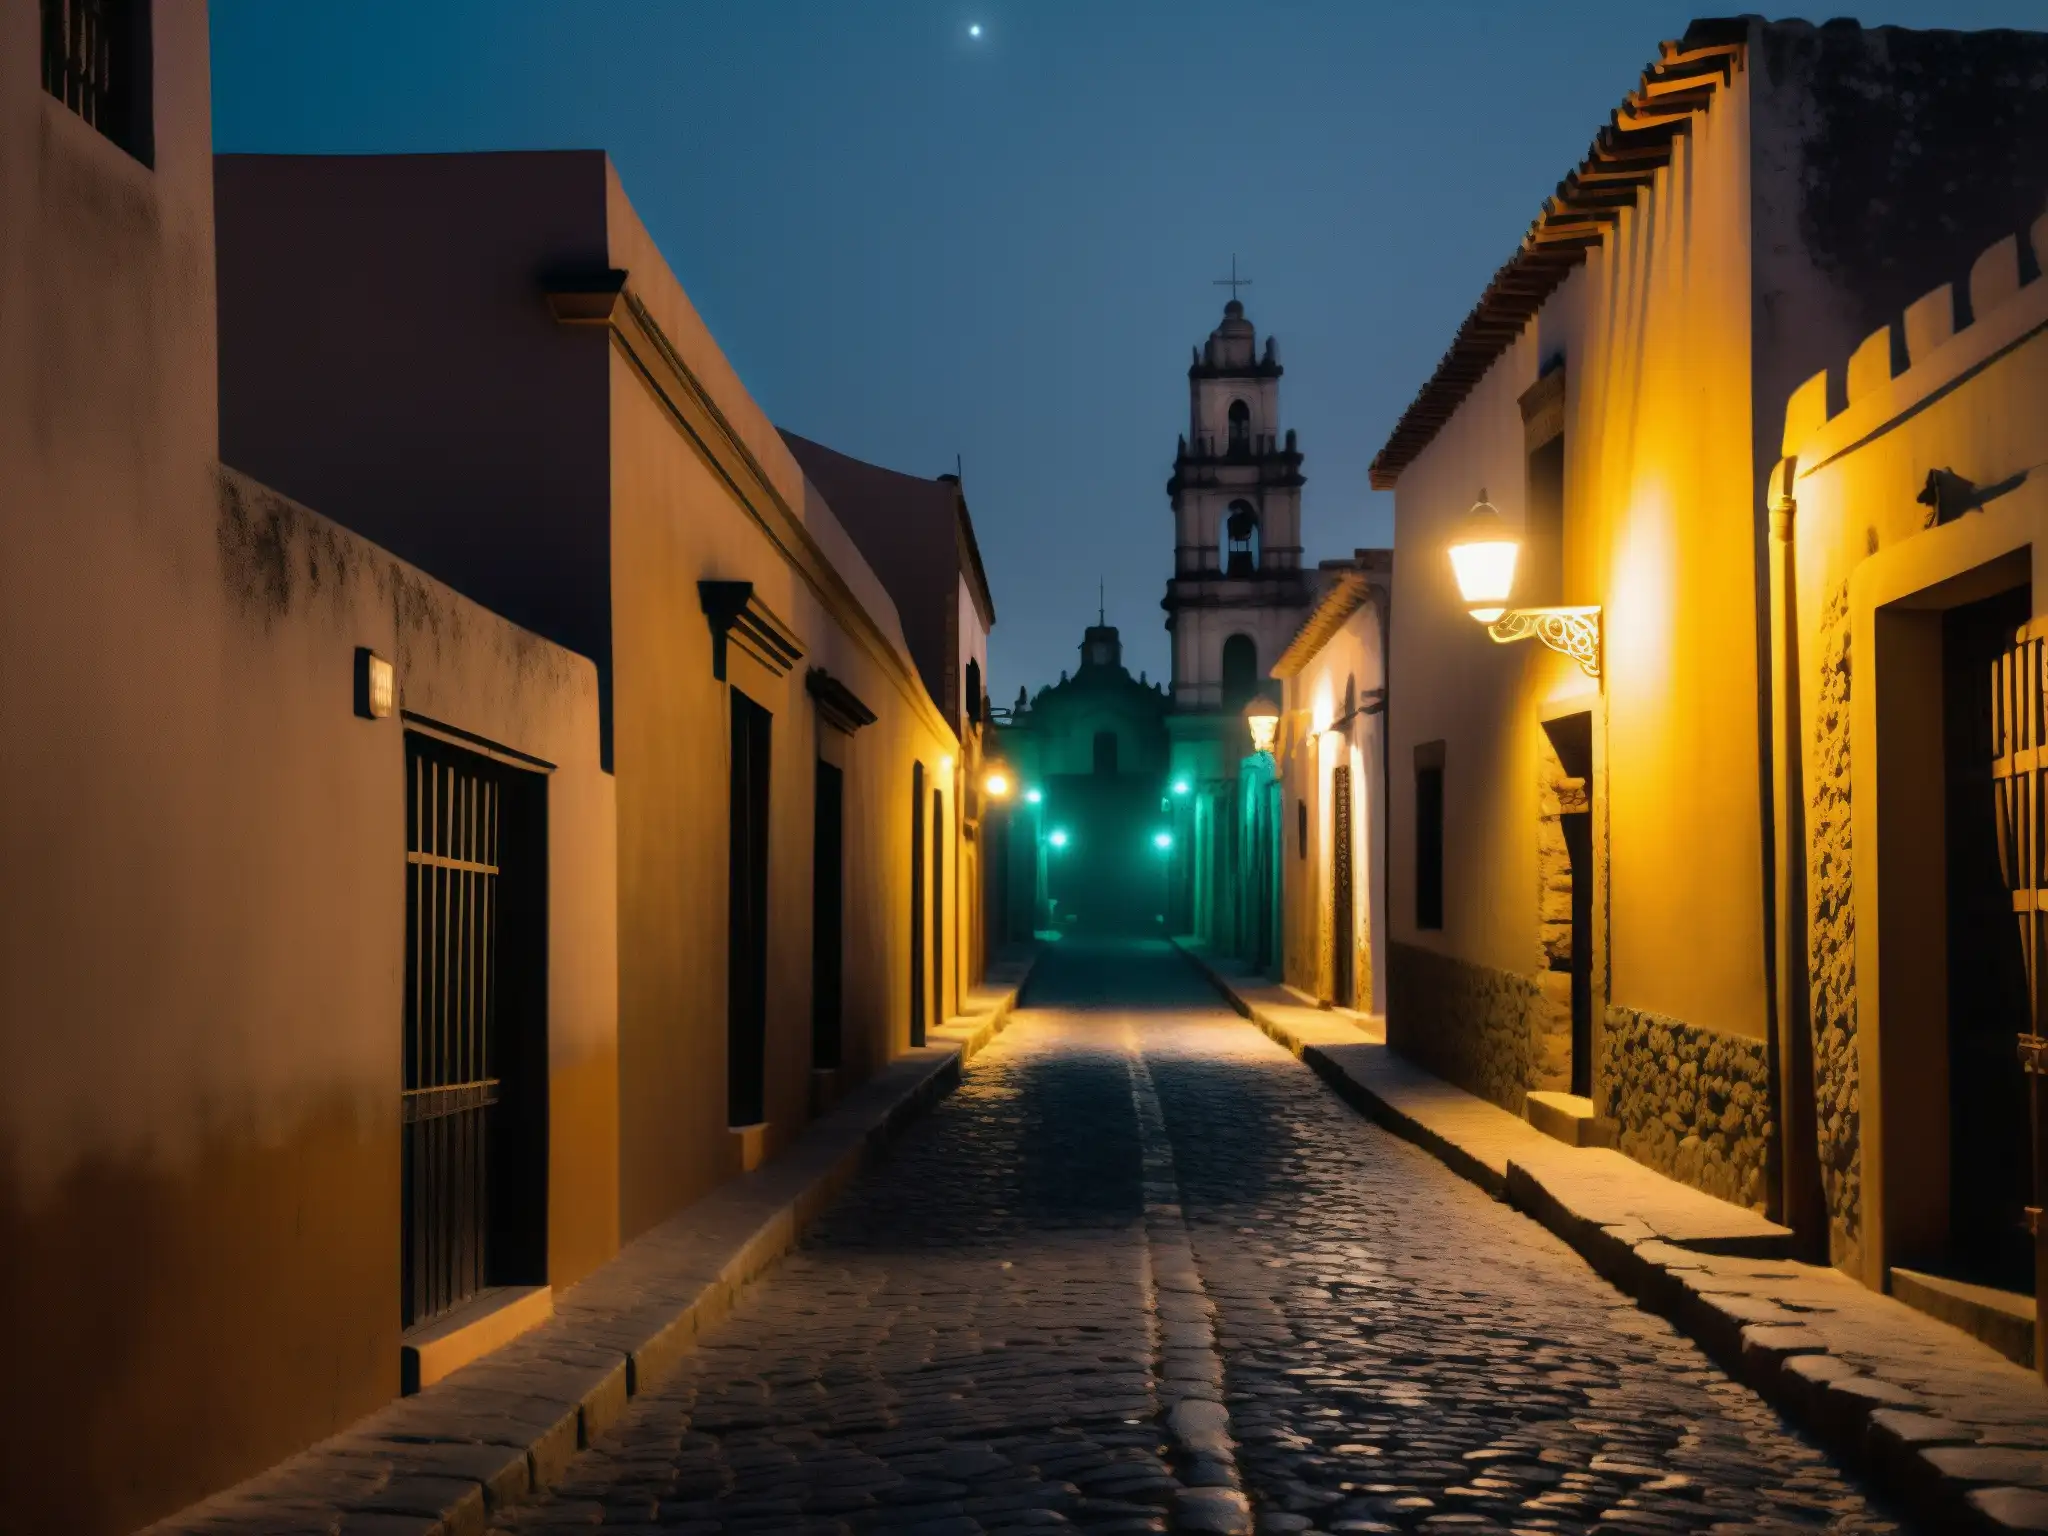 Un callejón misterioso en México de noche, iluminado por luces tenues